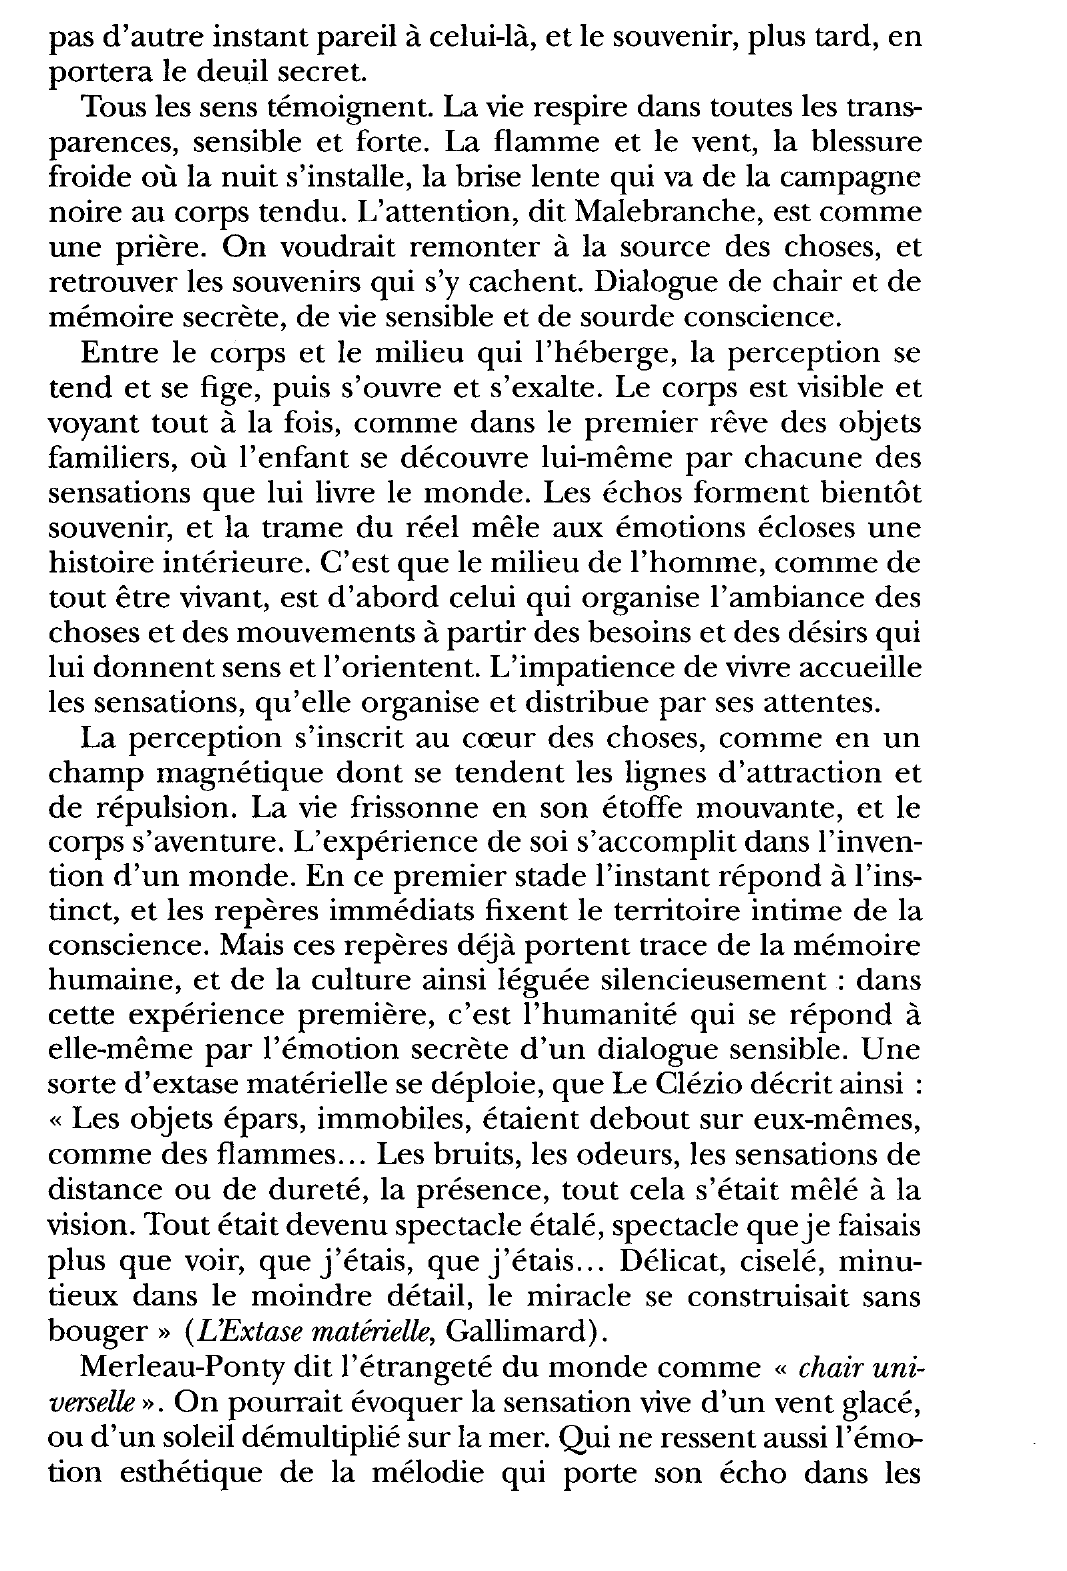 Prévisualisation du document Merleau-Ponty, L'OEil et l'Esprit, Gallimard.